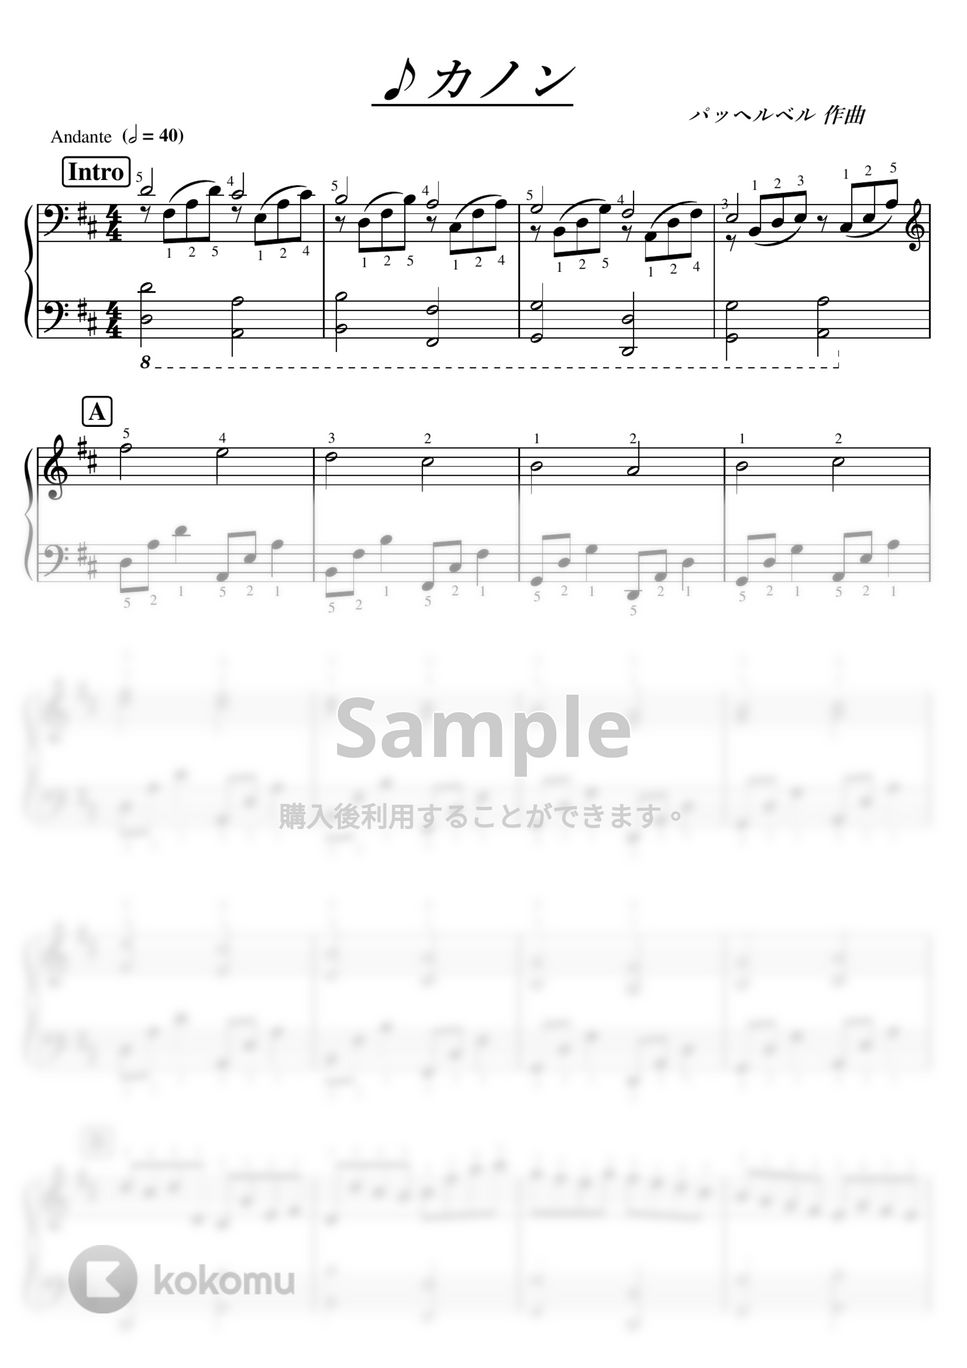 パッヘルベル - 【初級～中級】カノン/パッヘルベル by ピアノの先生の楽譜集